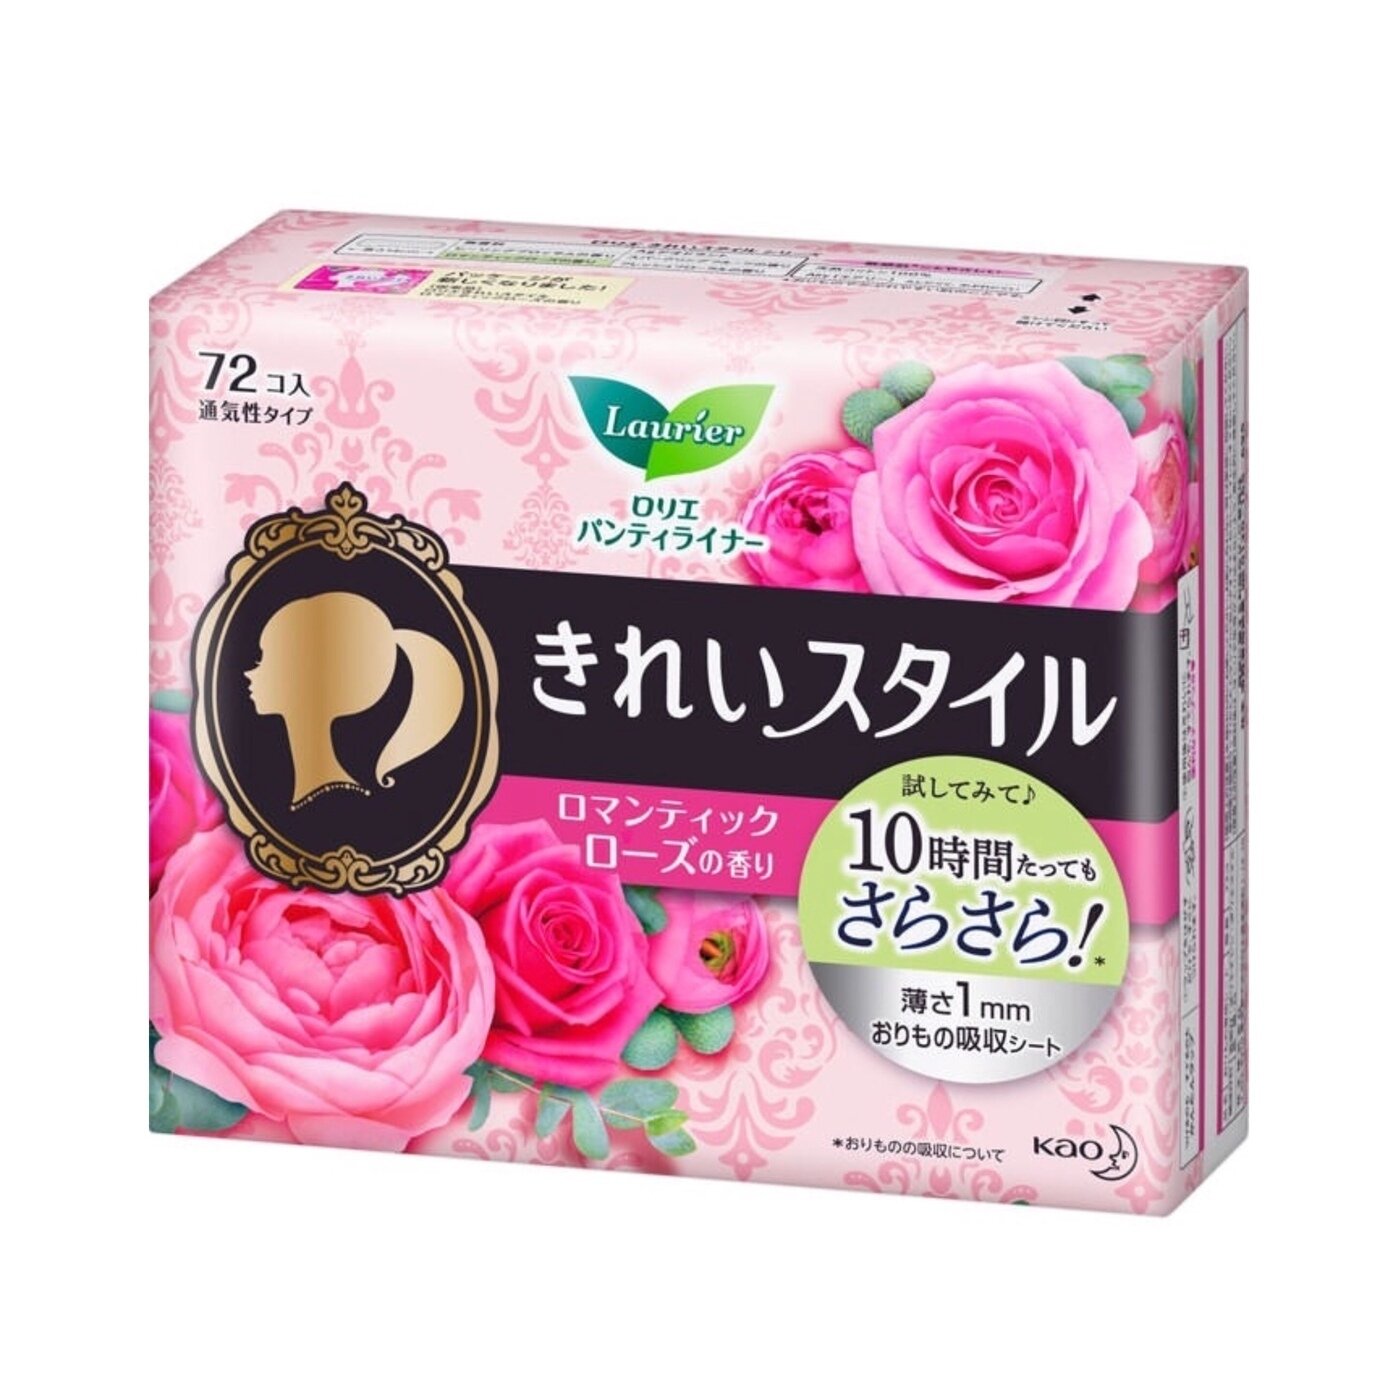 Ежедневные гигиенические прокладки с ароматом розы KAO "Laurier" Beauty Style 72 шт. в упаковке